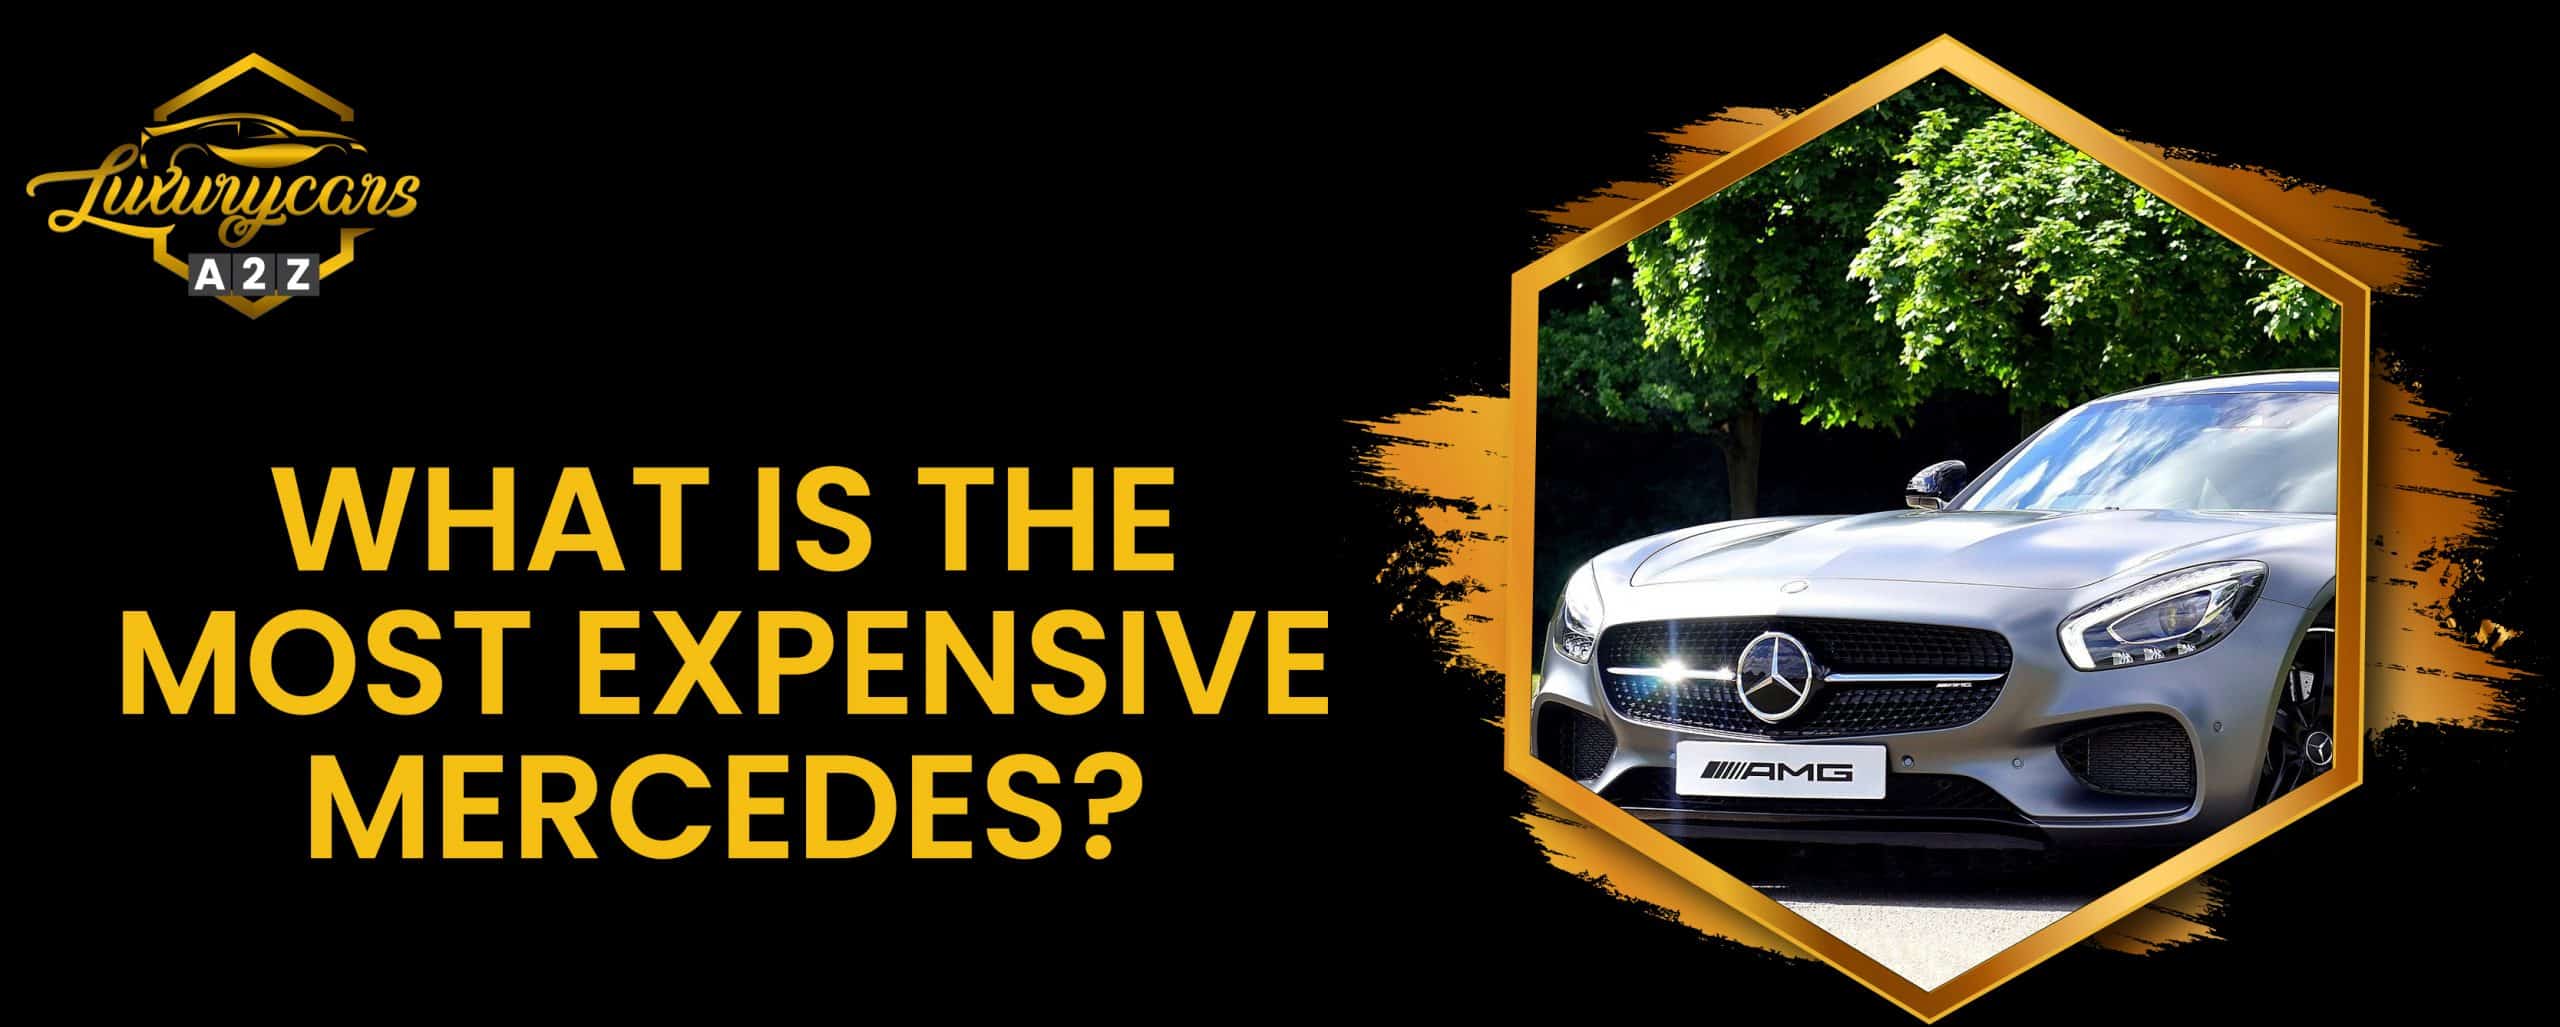 Quelle est la Mercedes la plus chère ?